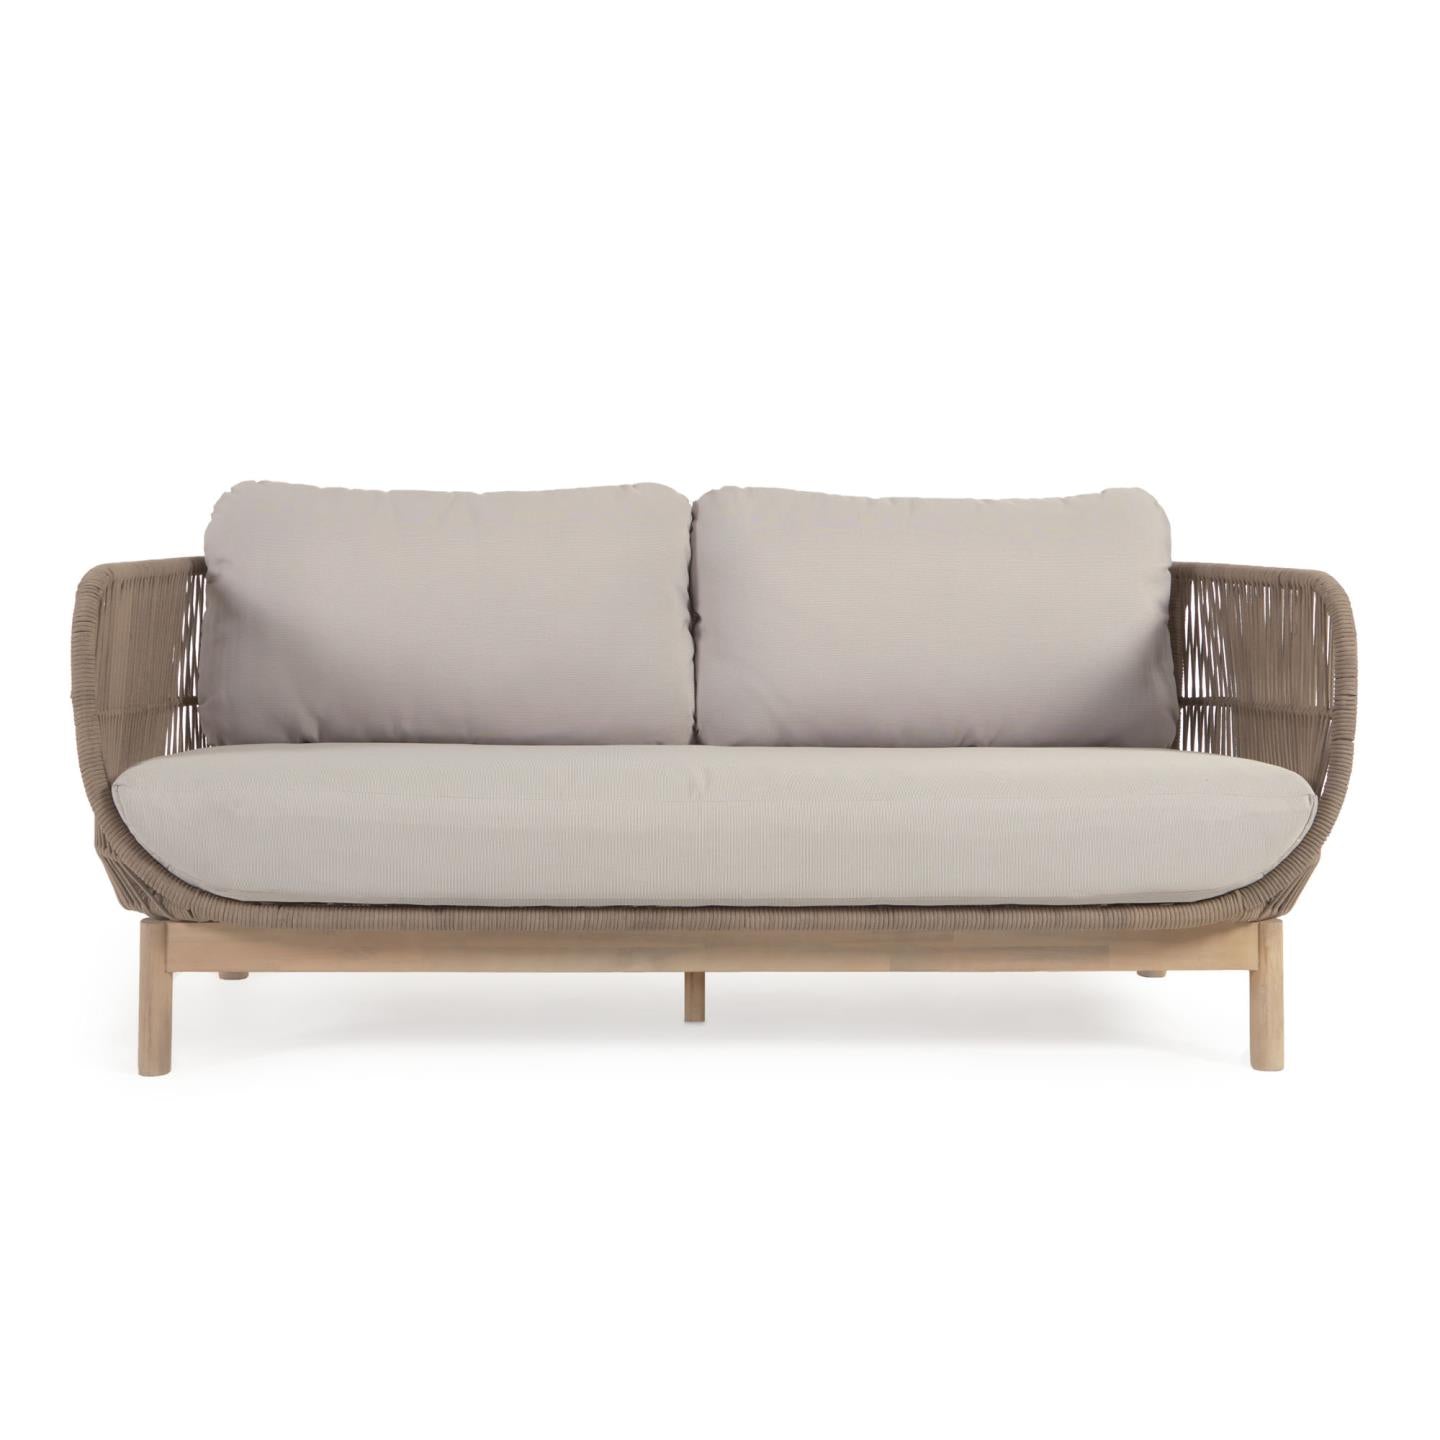 Catalina 3 személyes kanapé bézs színű zsinórból és 100% FSC tömör akácfából, 170 cm